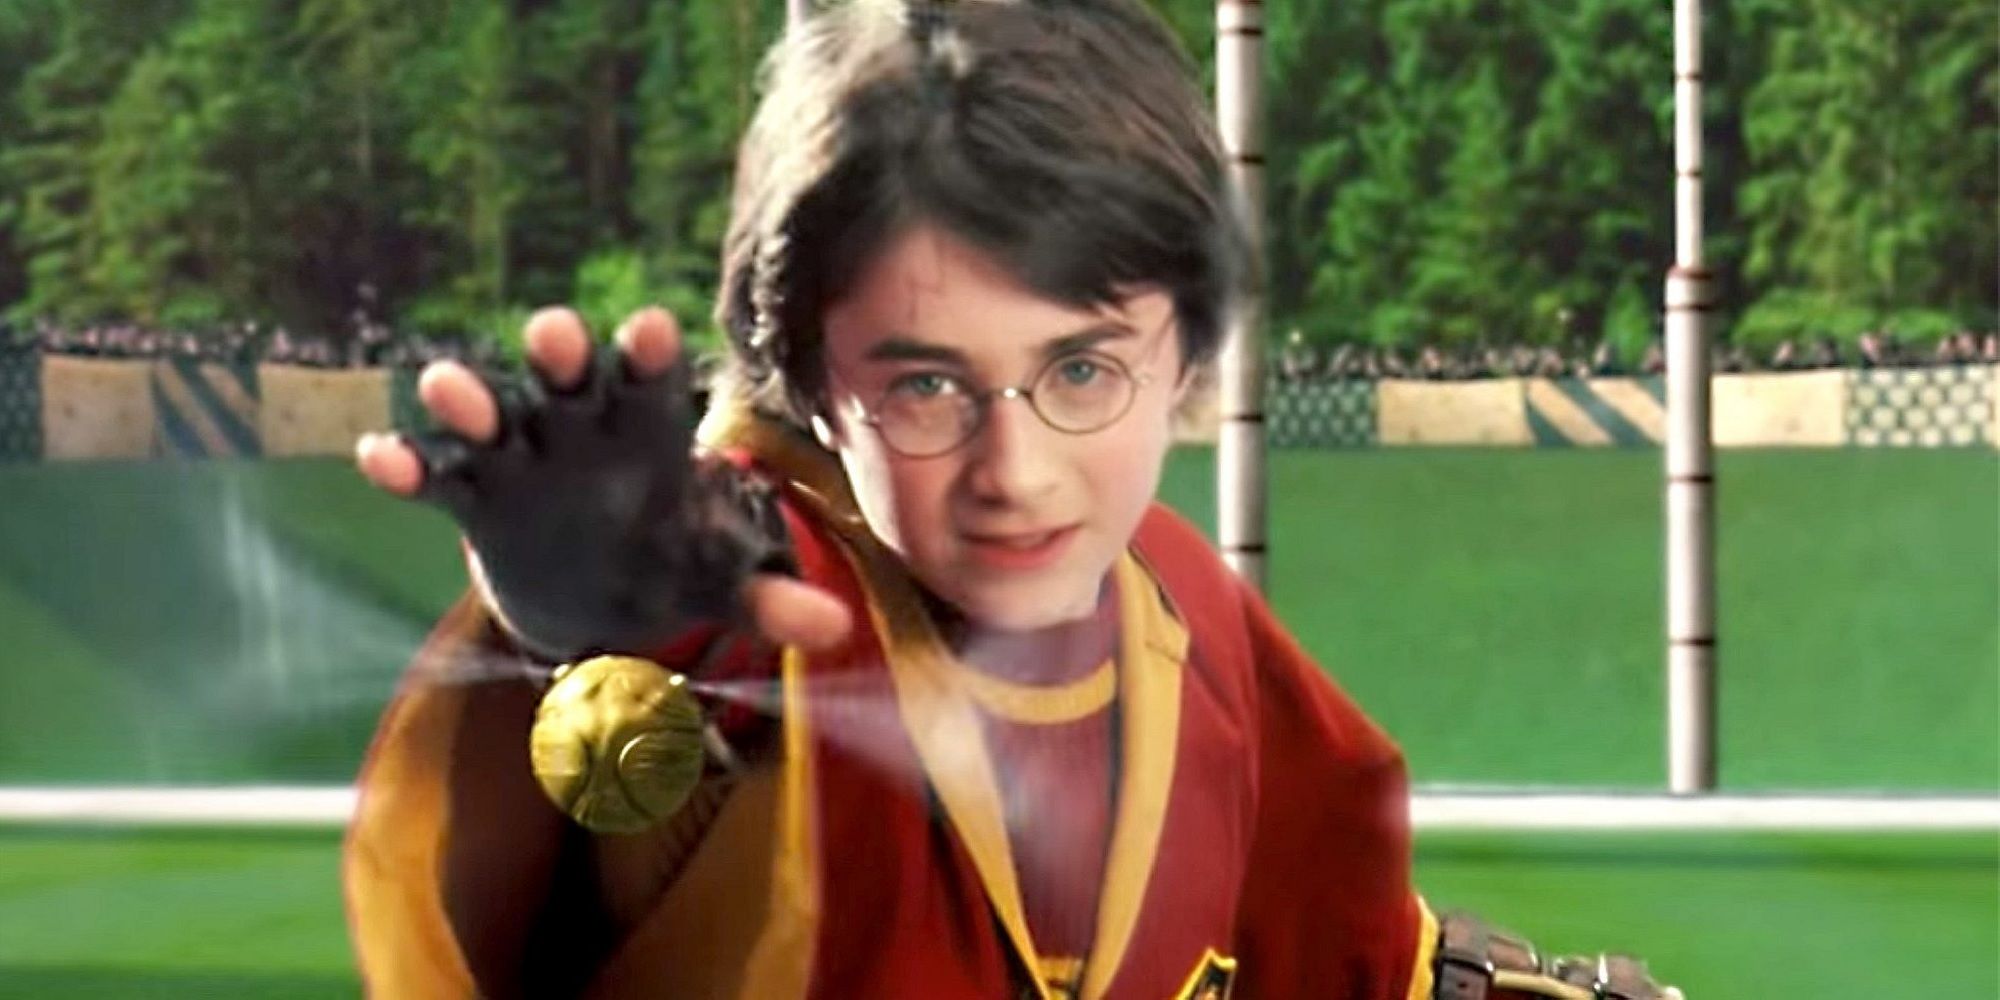 Harry prestes a pegar o pomo de ouro em Harry Potter e a Pedra Filosofal